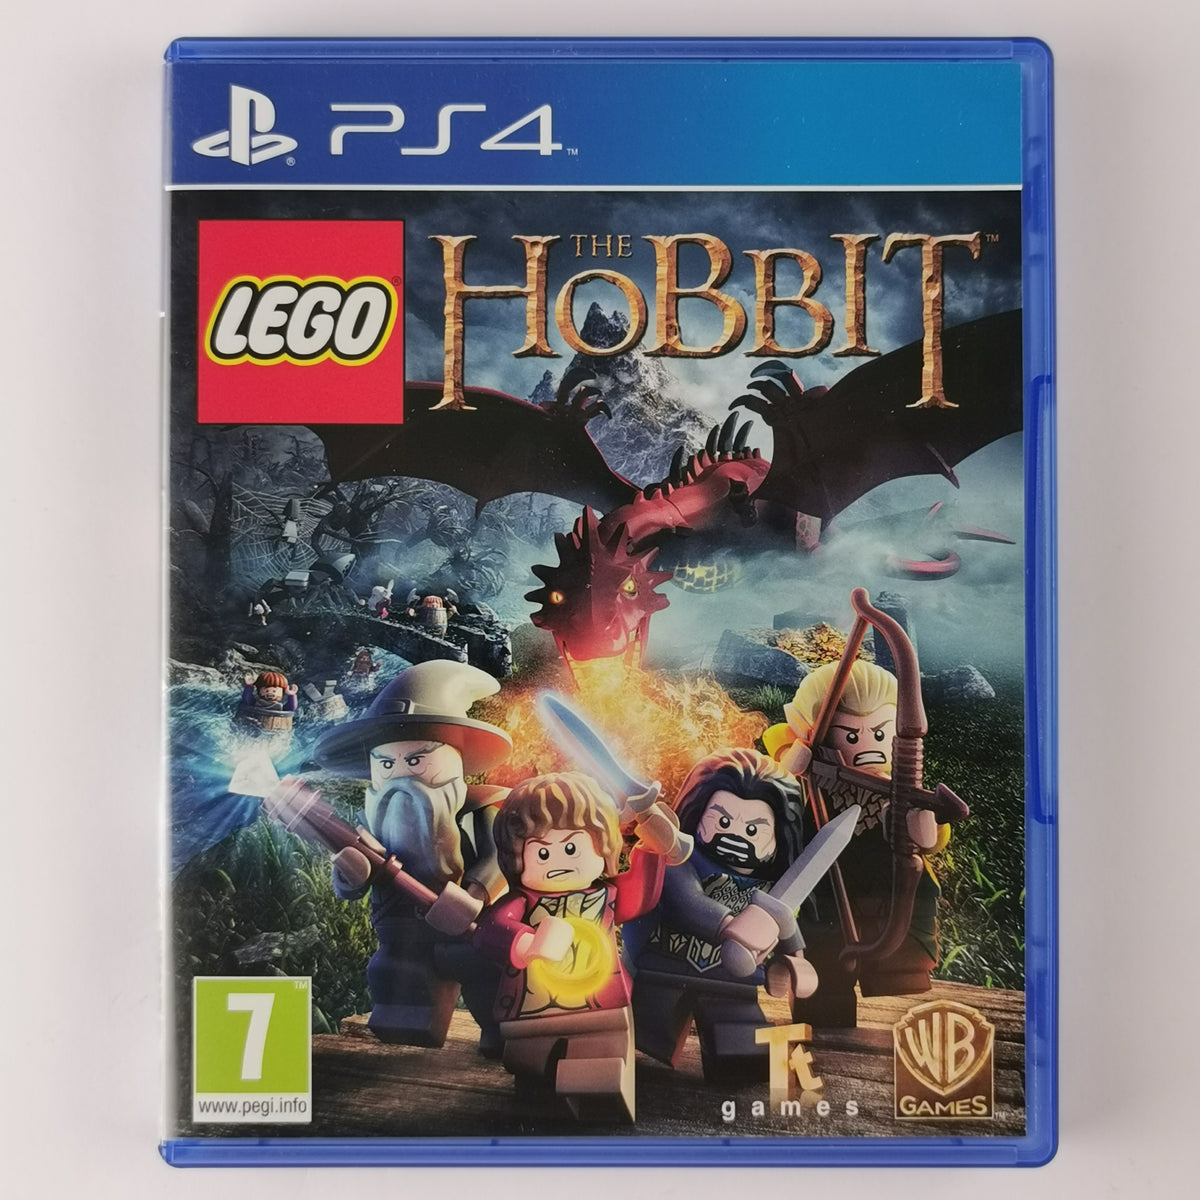 Ps4 Lego The Hobbit (Eu) [PS4]